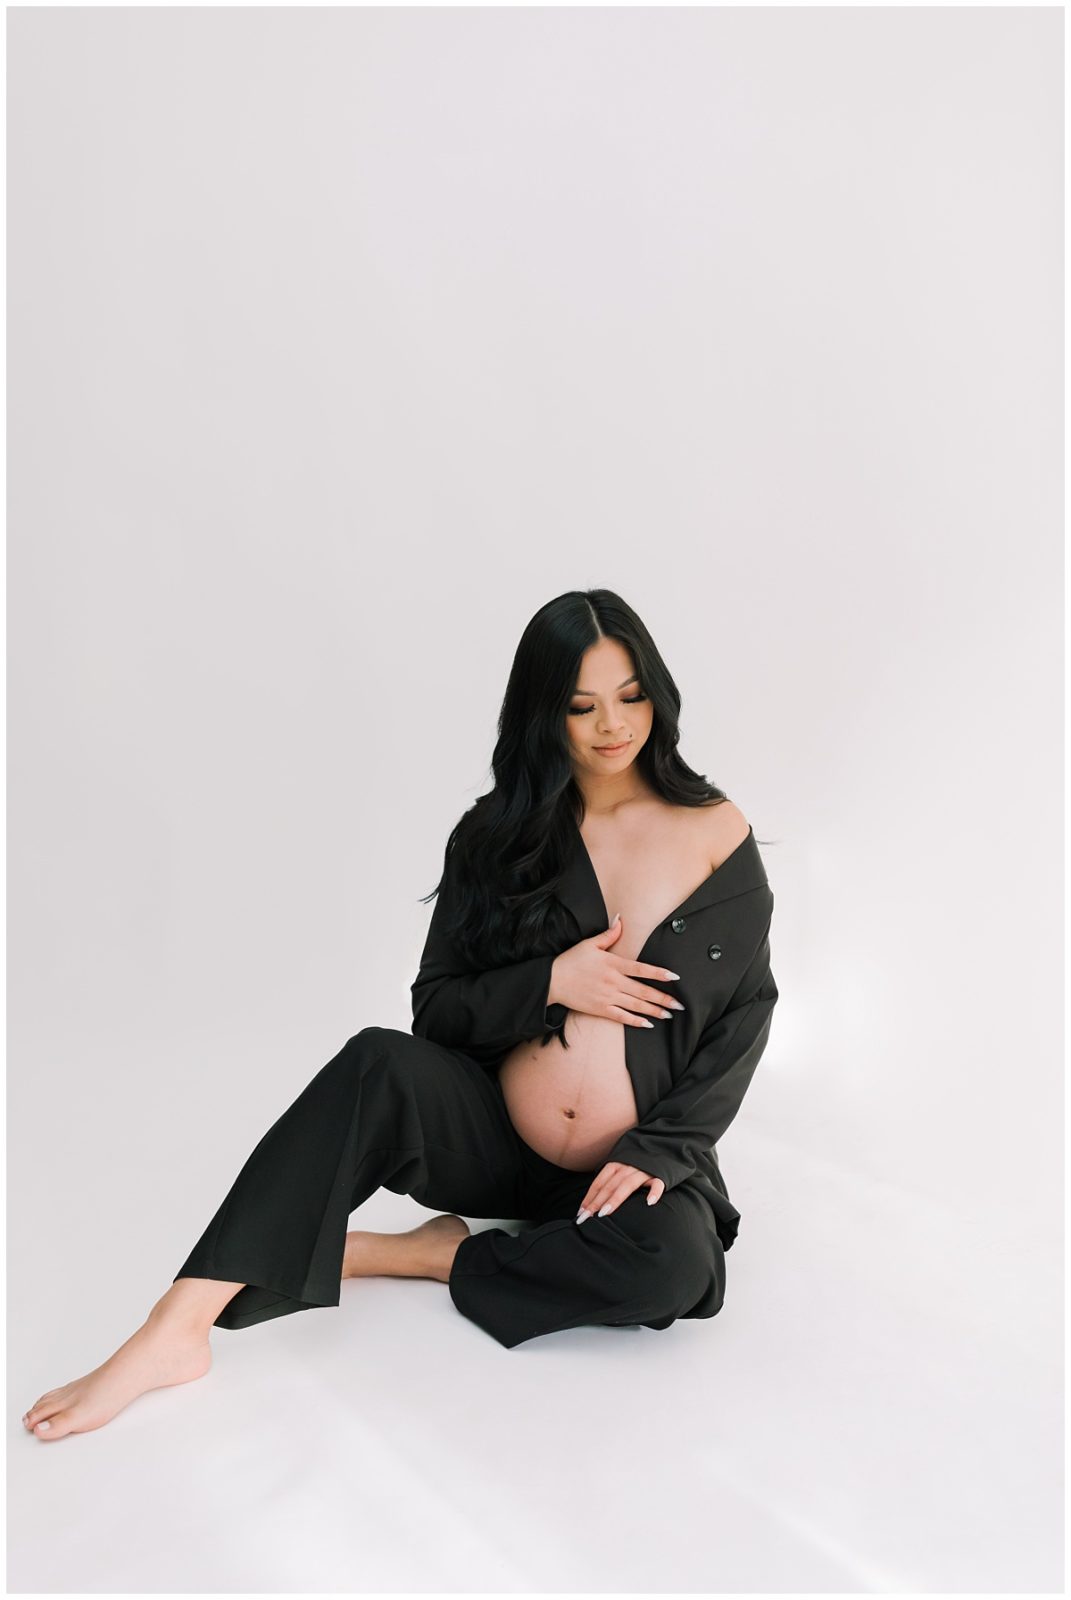 Pant Suit Maternity Photos